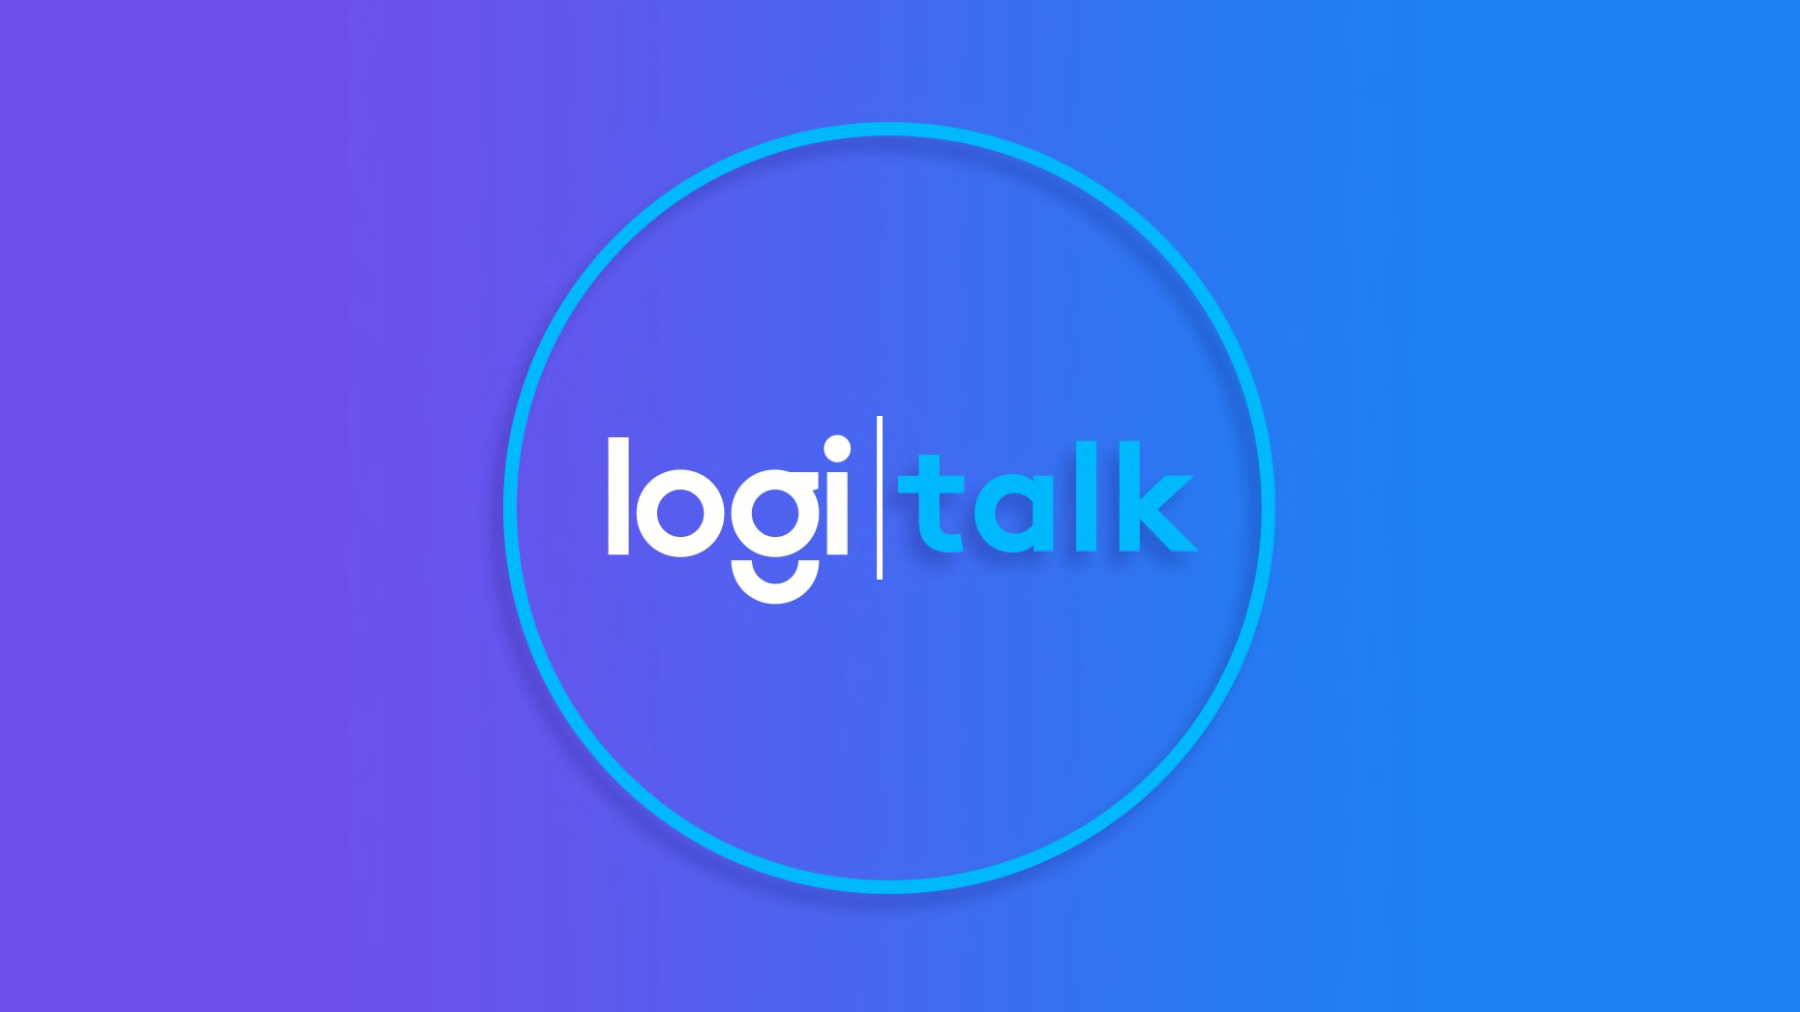 Logi talk 標誌